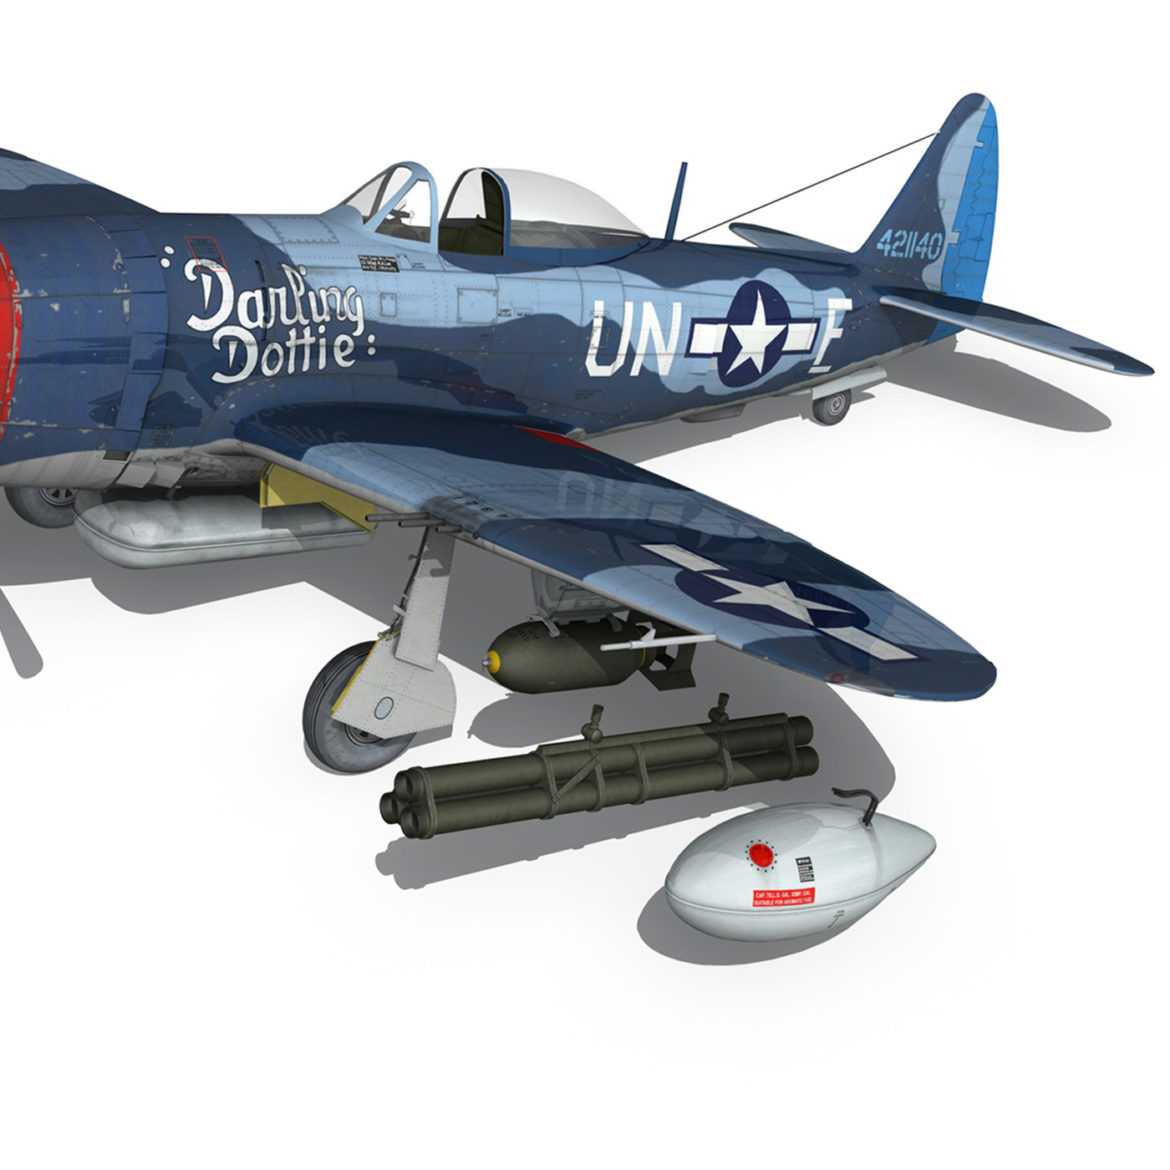 republic p-47m thunderbolt – darling dottie 3d model 3ds c4d lwo lw lws obj fbx 303851